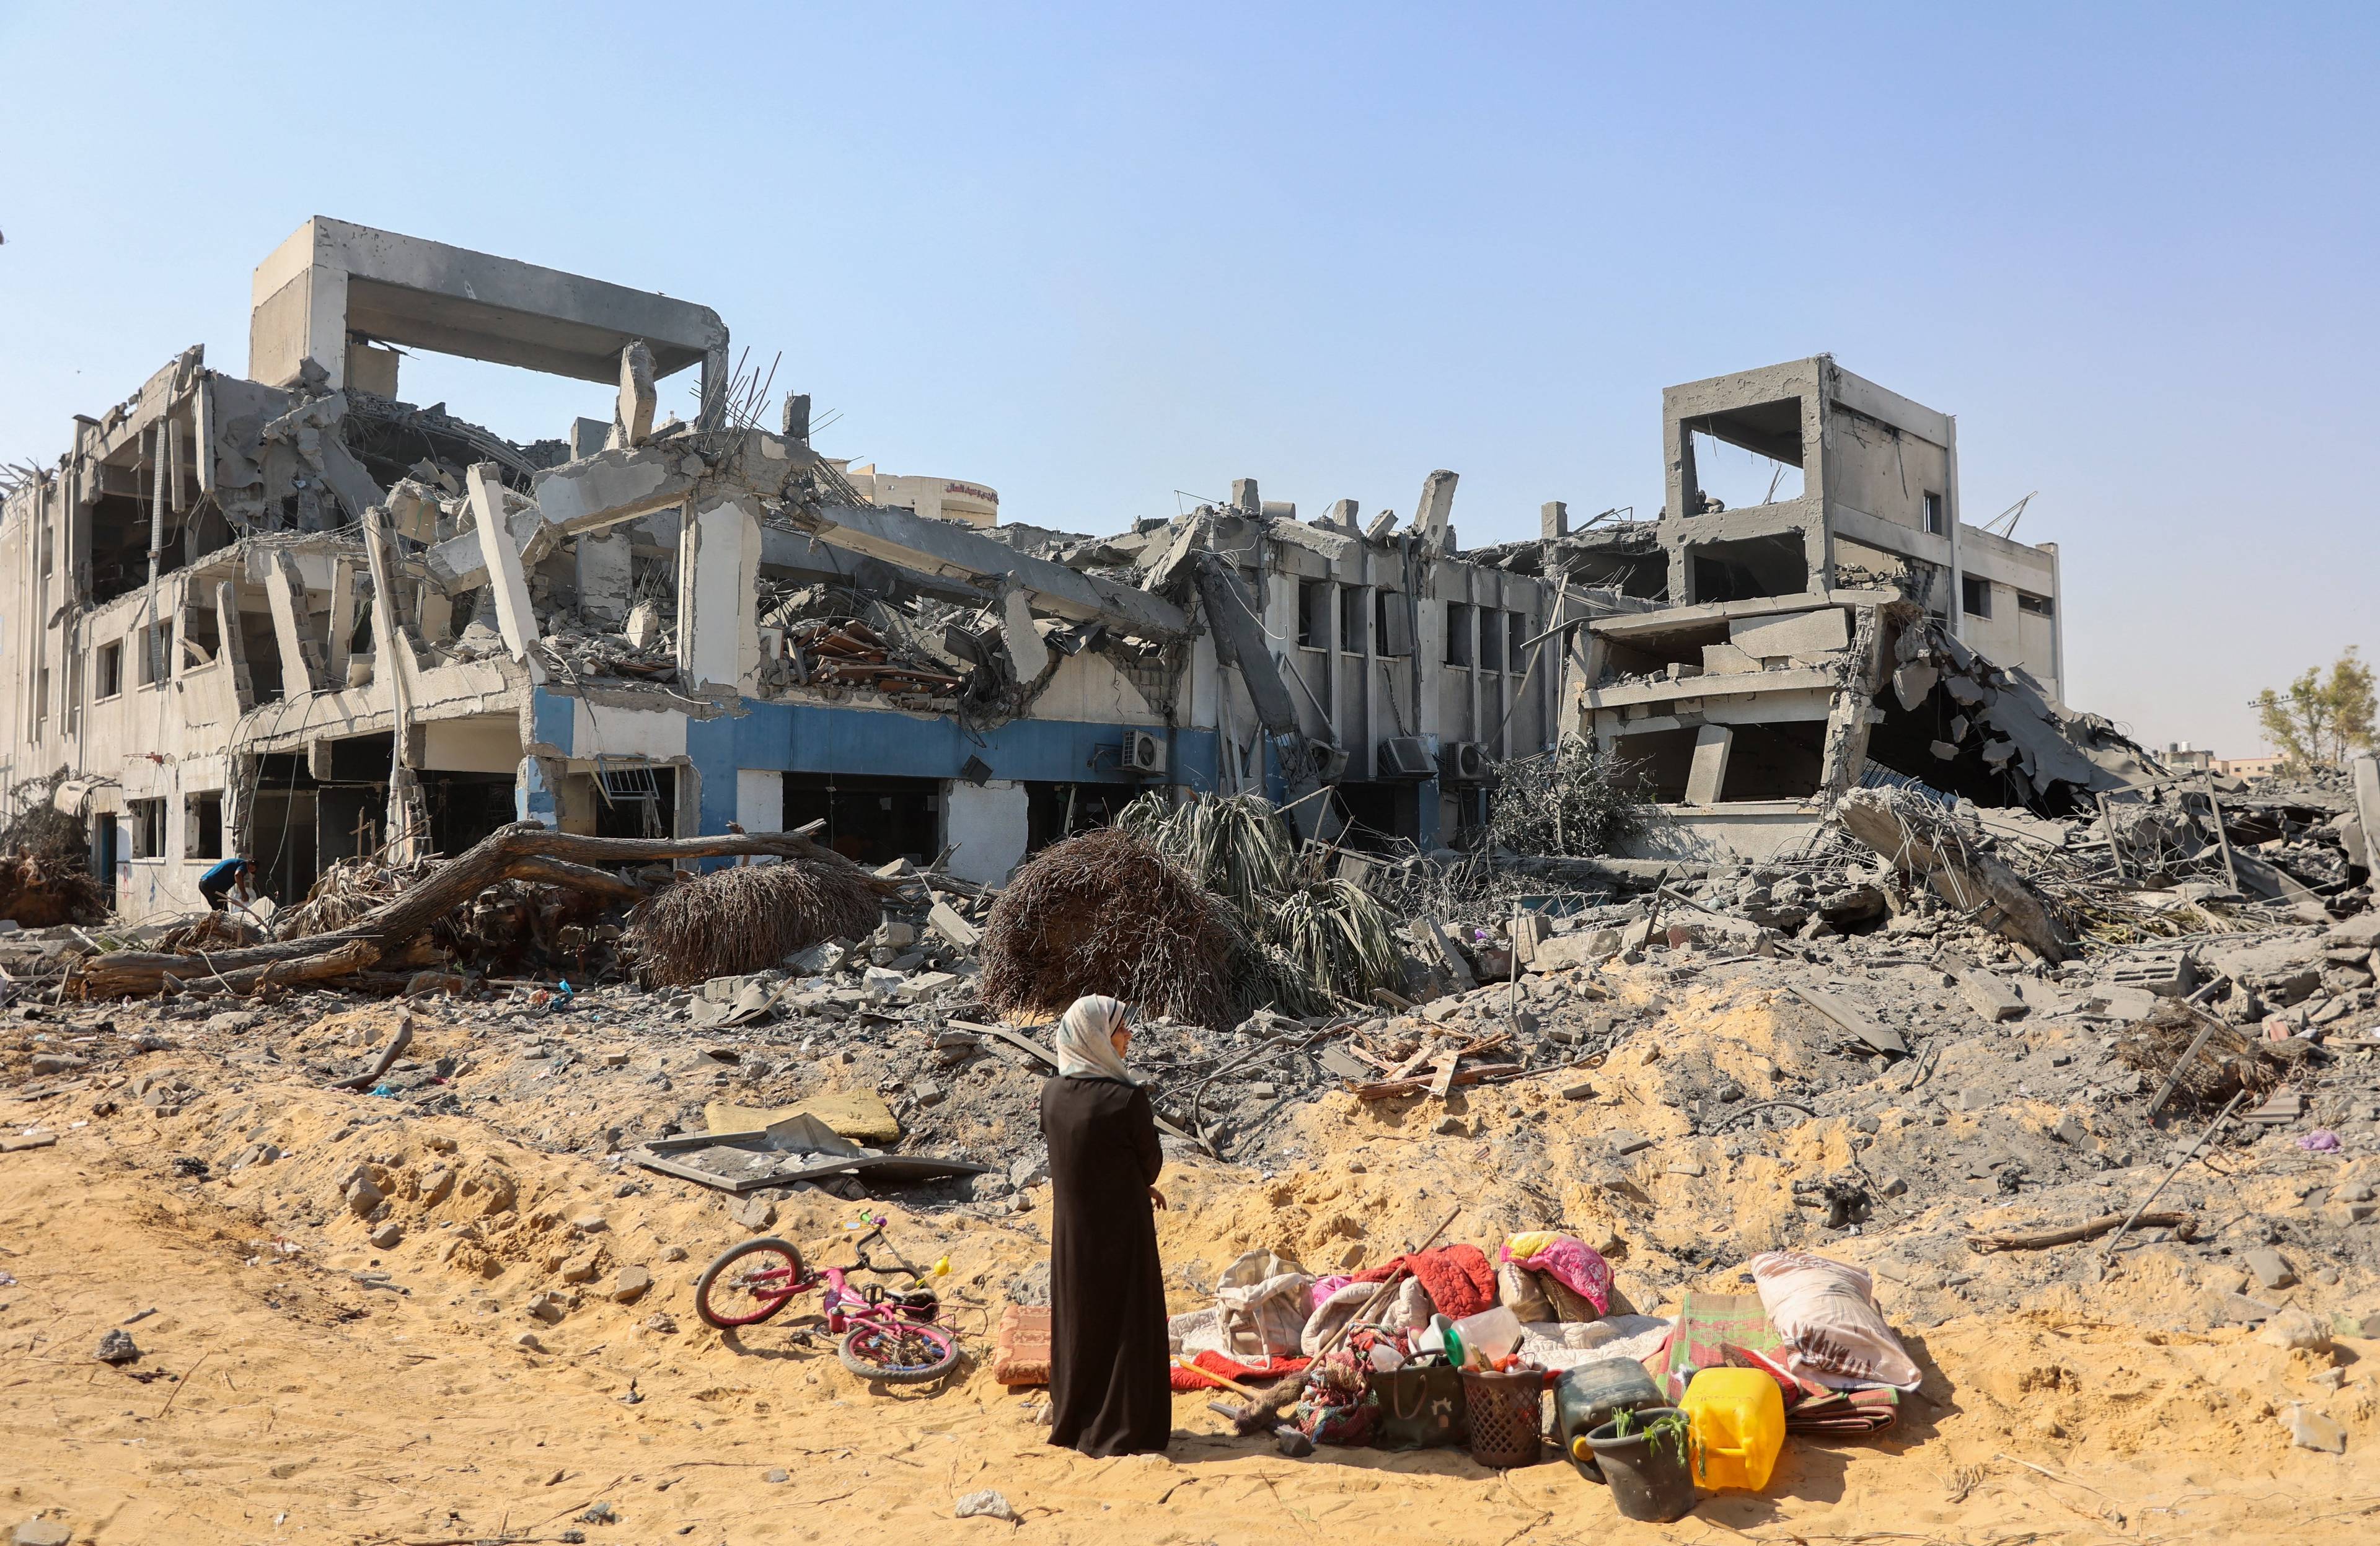 Kobieta stoi przez zniszczonym budynkiem w Gazie, na ziemi leżą pakunki